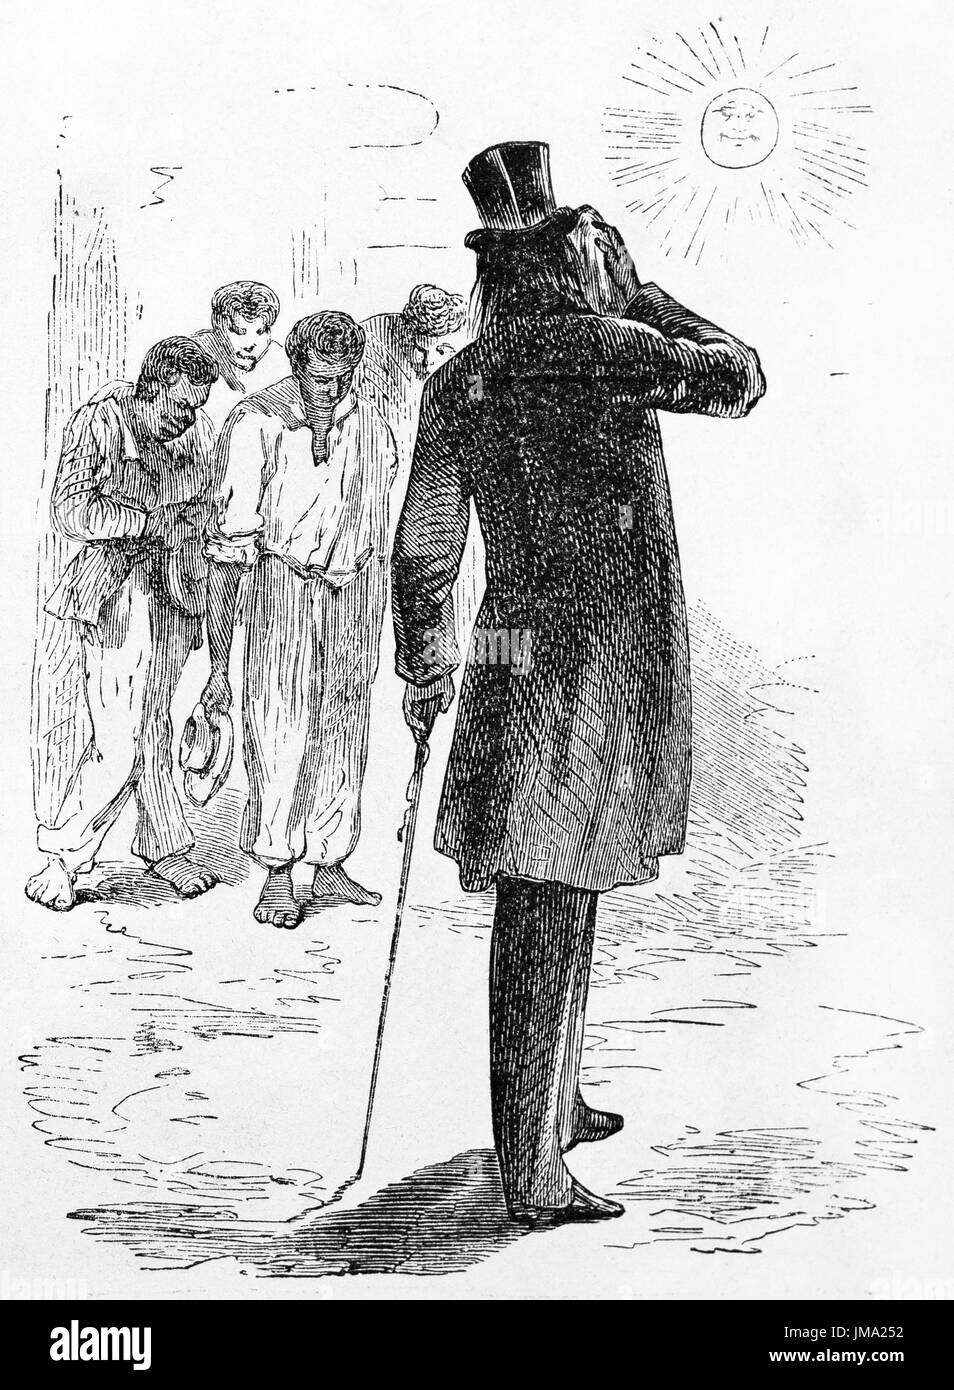 Vecchia illustrazione di un uomo vestito di nero visto dal retro. Creato da Gauchard, pubblicato in Le Tour du Monde, Parigi, 1861. Foto Stock